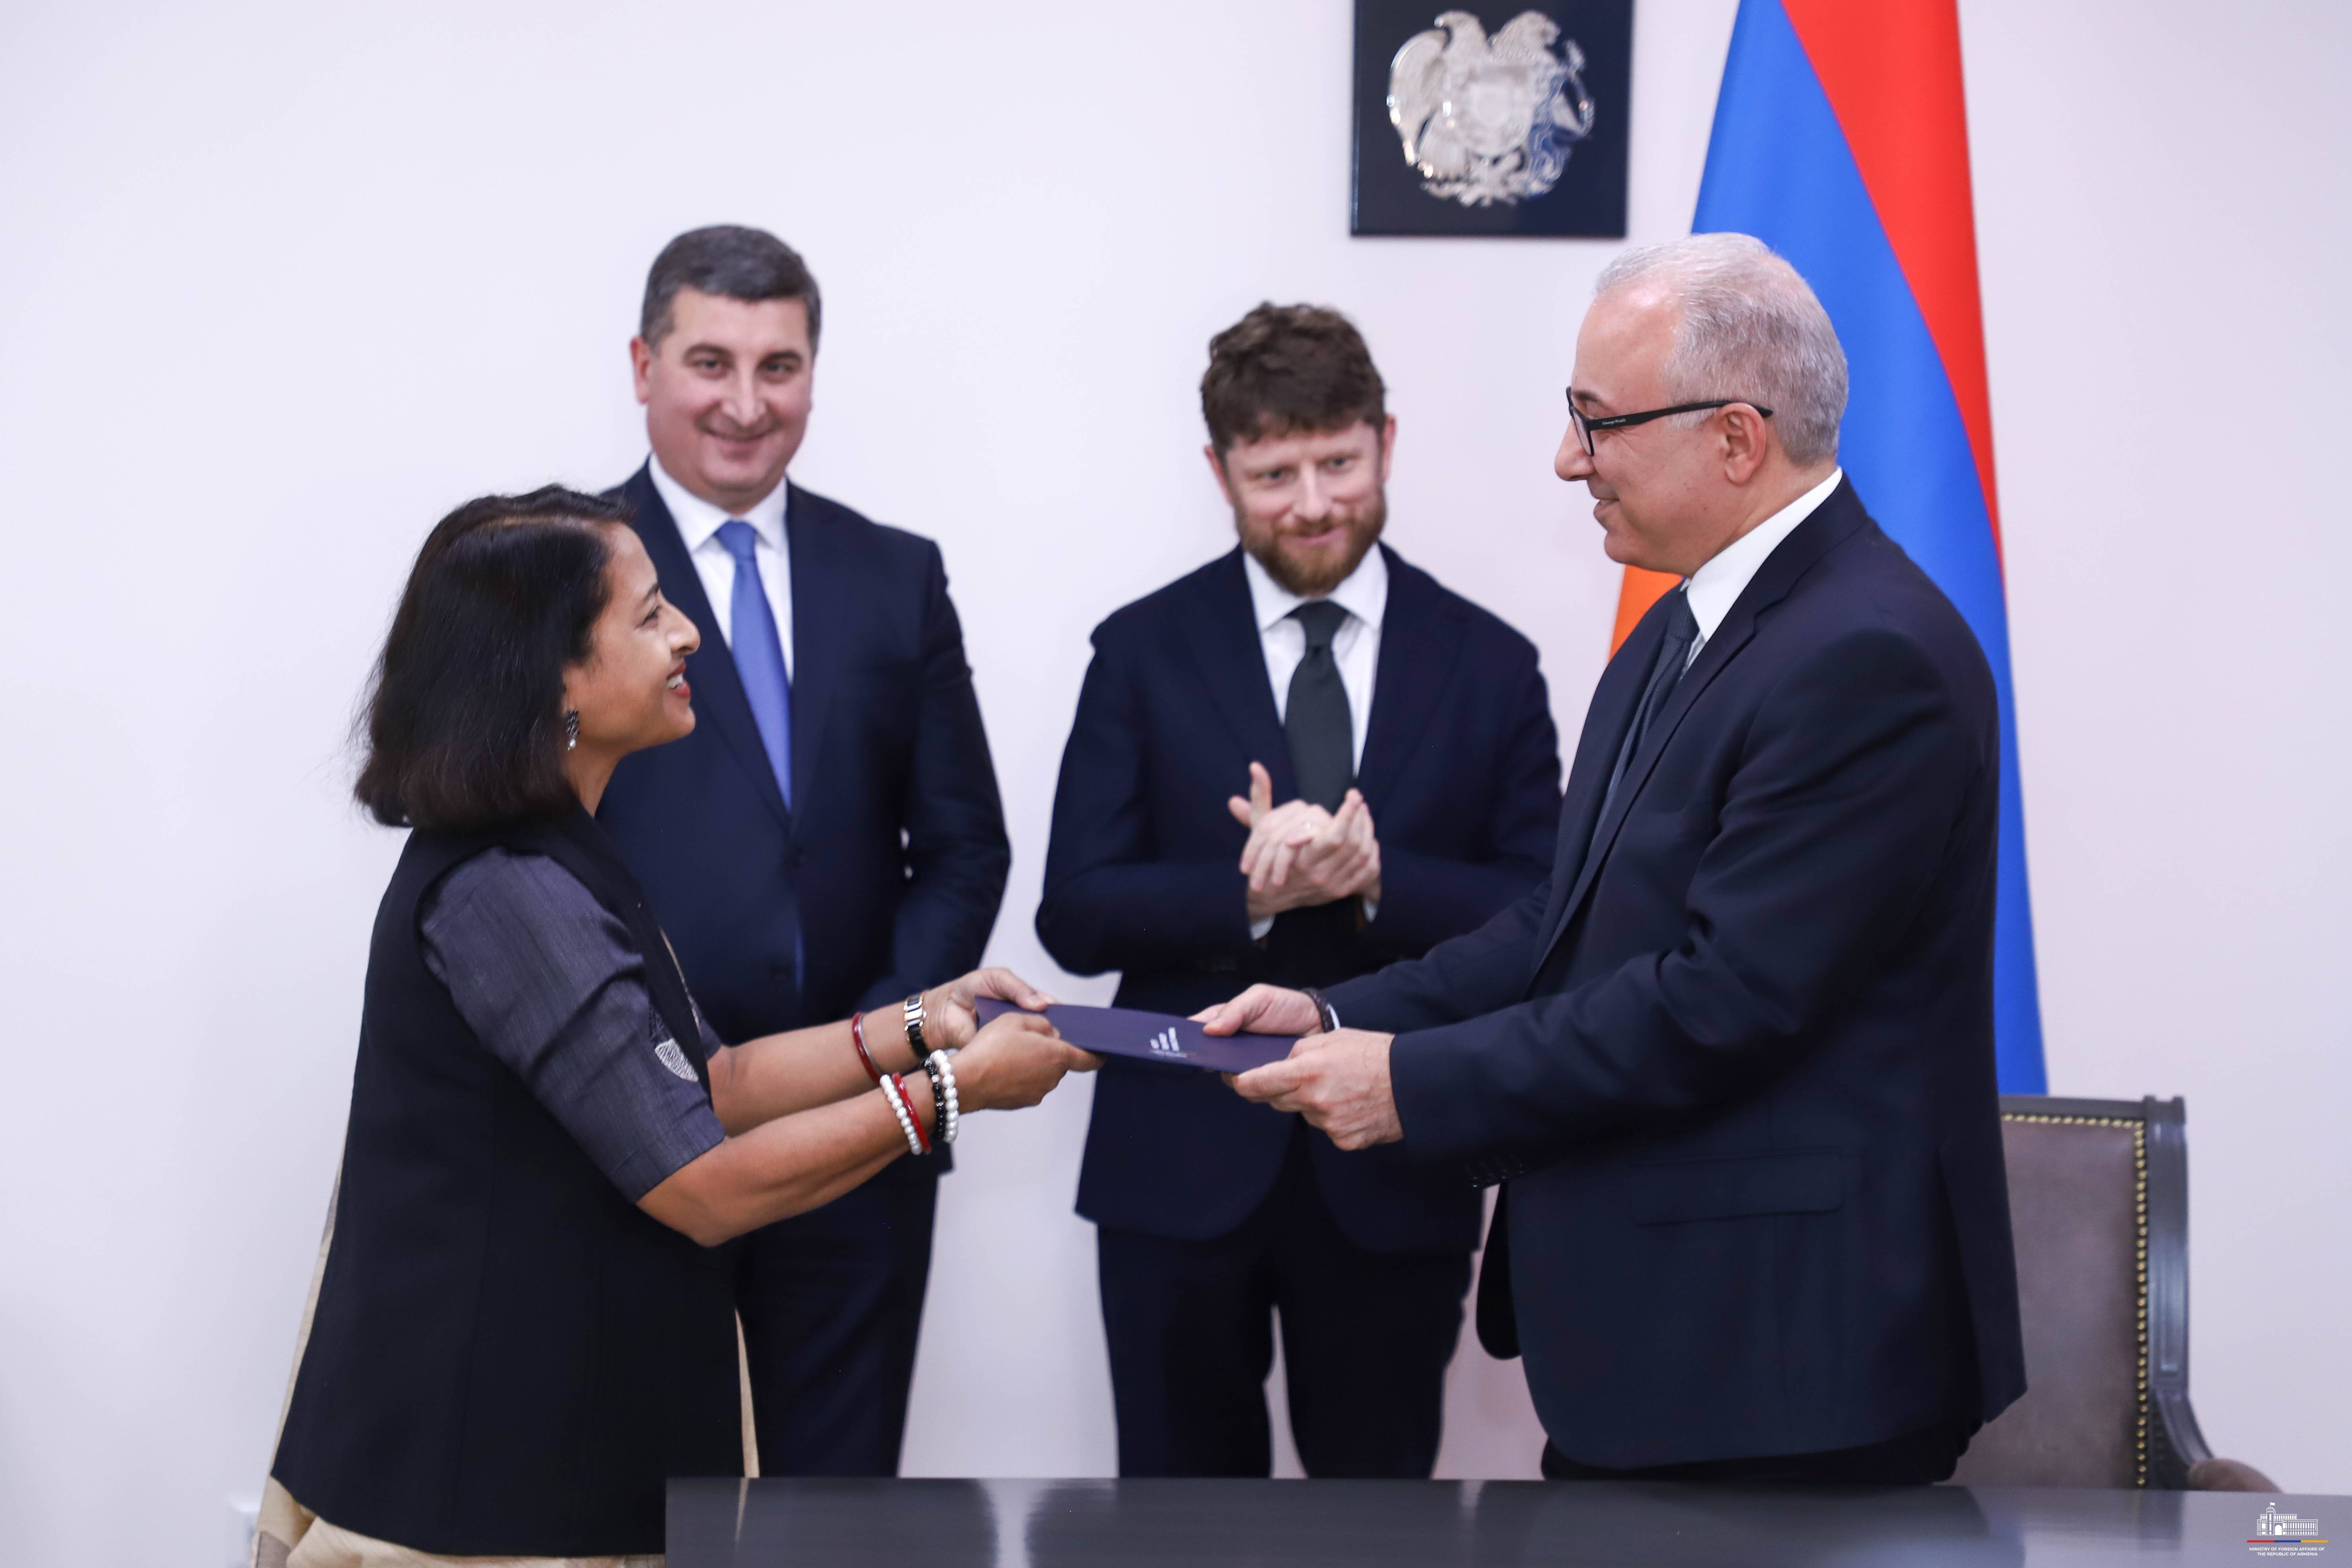 ՀՀ ԱԳՆ-ում ստորագրվել է Հայաստանի կողմից «Միջազգային արևային դաշինքի հիմնադրման մասին» շրջանակային համաձայնագիրը